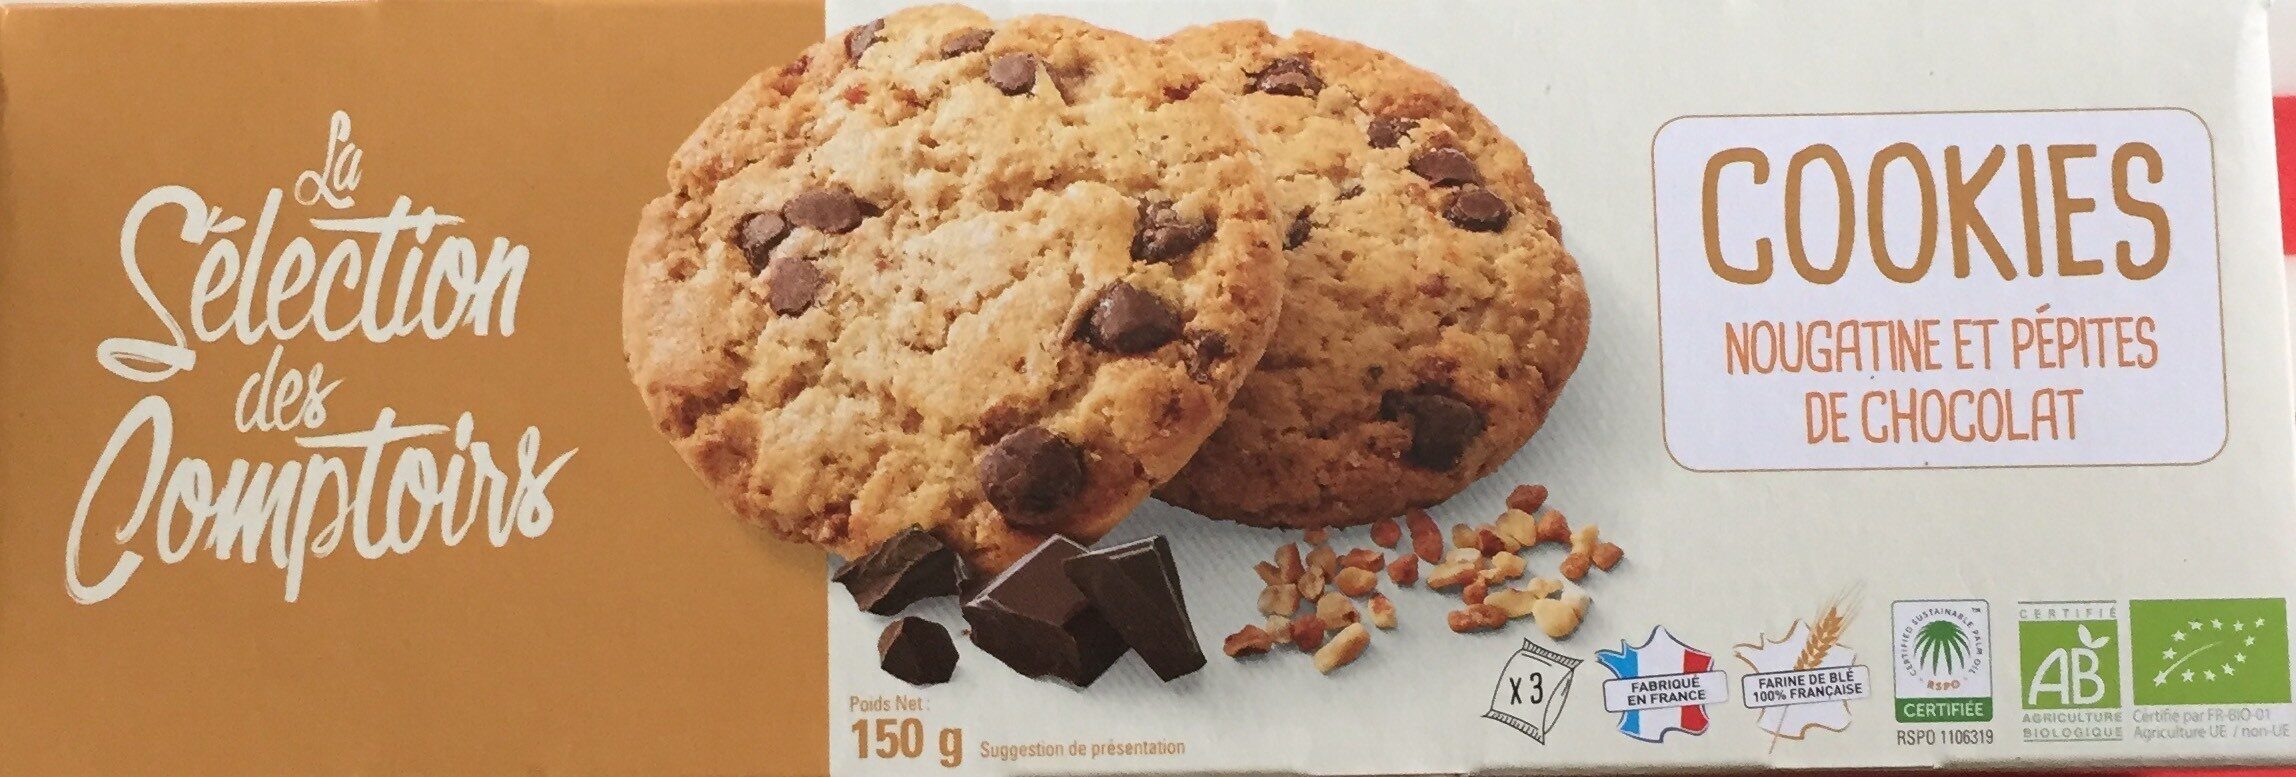 Cookies nougatine et pépites de chocolat - Product - fr